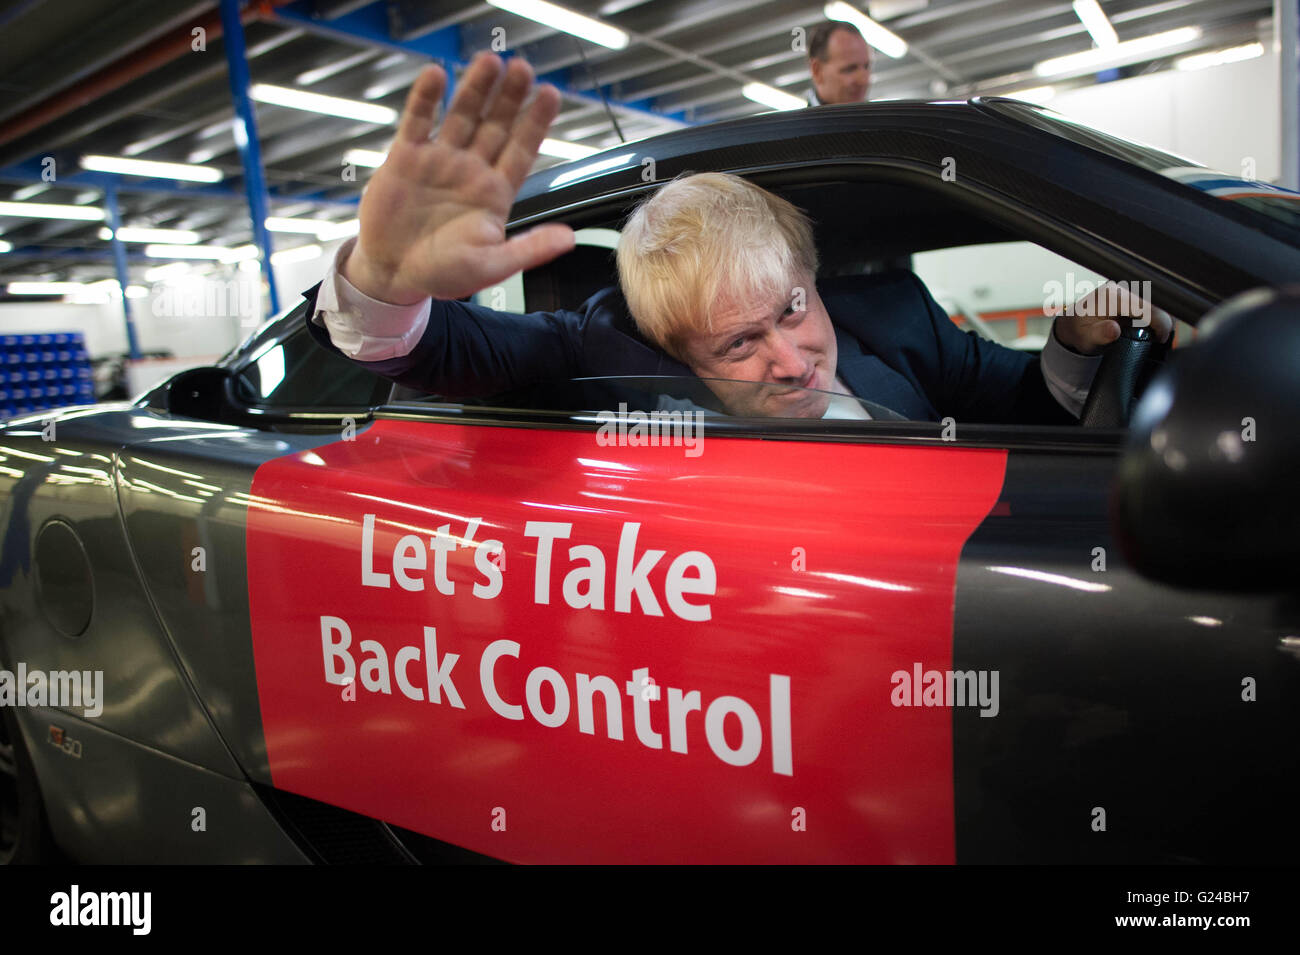 Ehemaliger Bürgermeister von London, Boris Johnson, sitzt in den Fahrersitz eines Sportwagens Ginetta bei seinem Besuch in der Ginetta-Fabrik in Garforth, West Yorkshire, im Rahmen seiner Tour auf der Kampagnenbus Abstimmung verlassen. Stockfoto